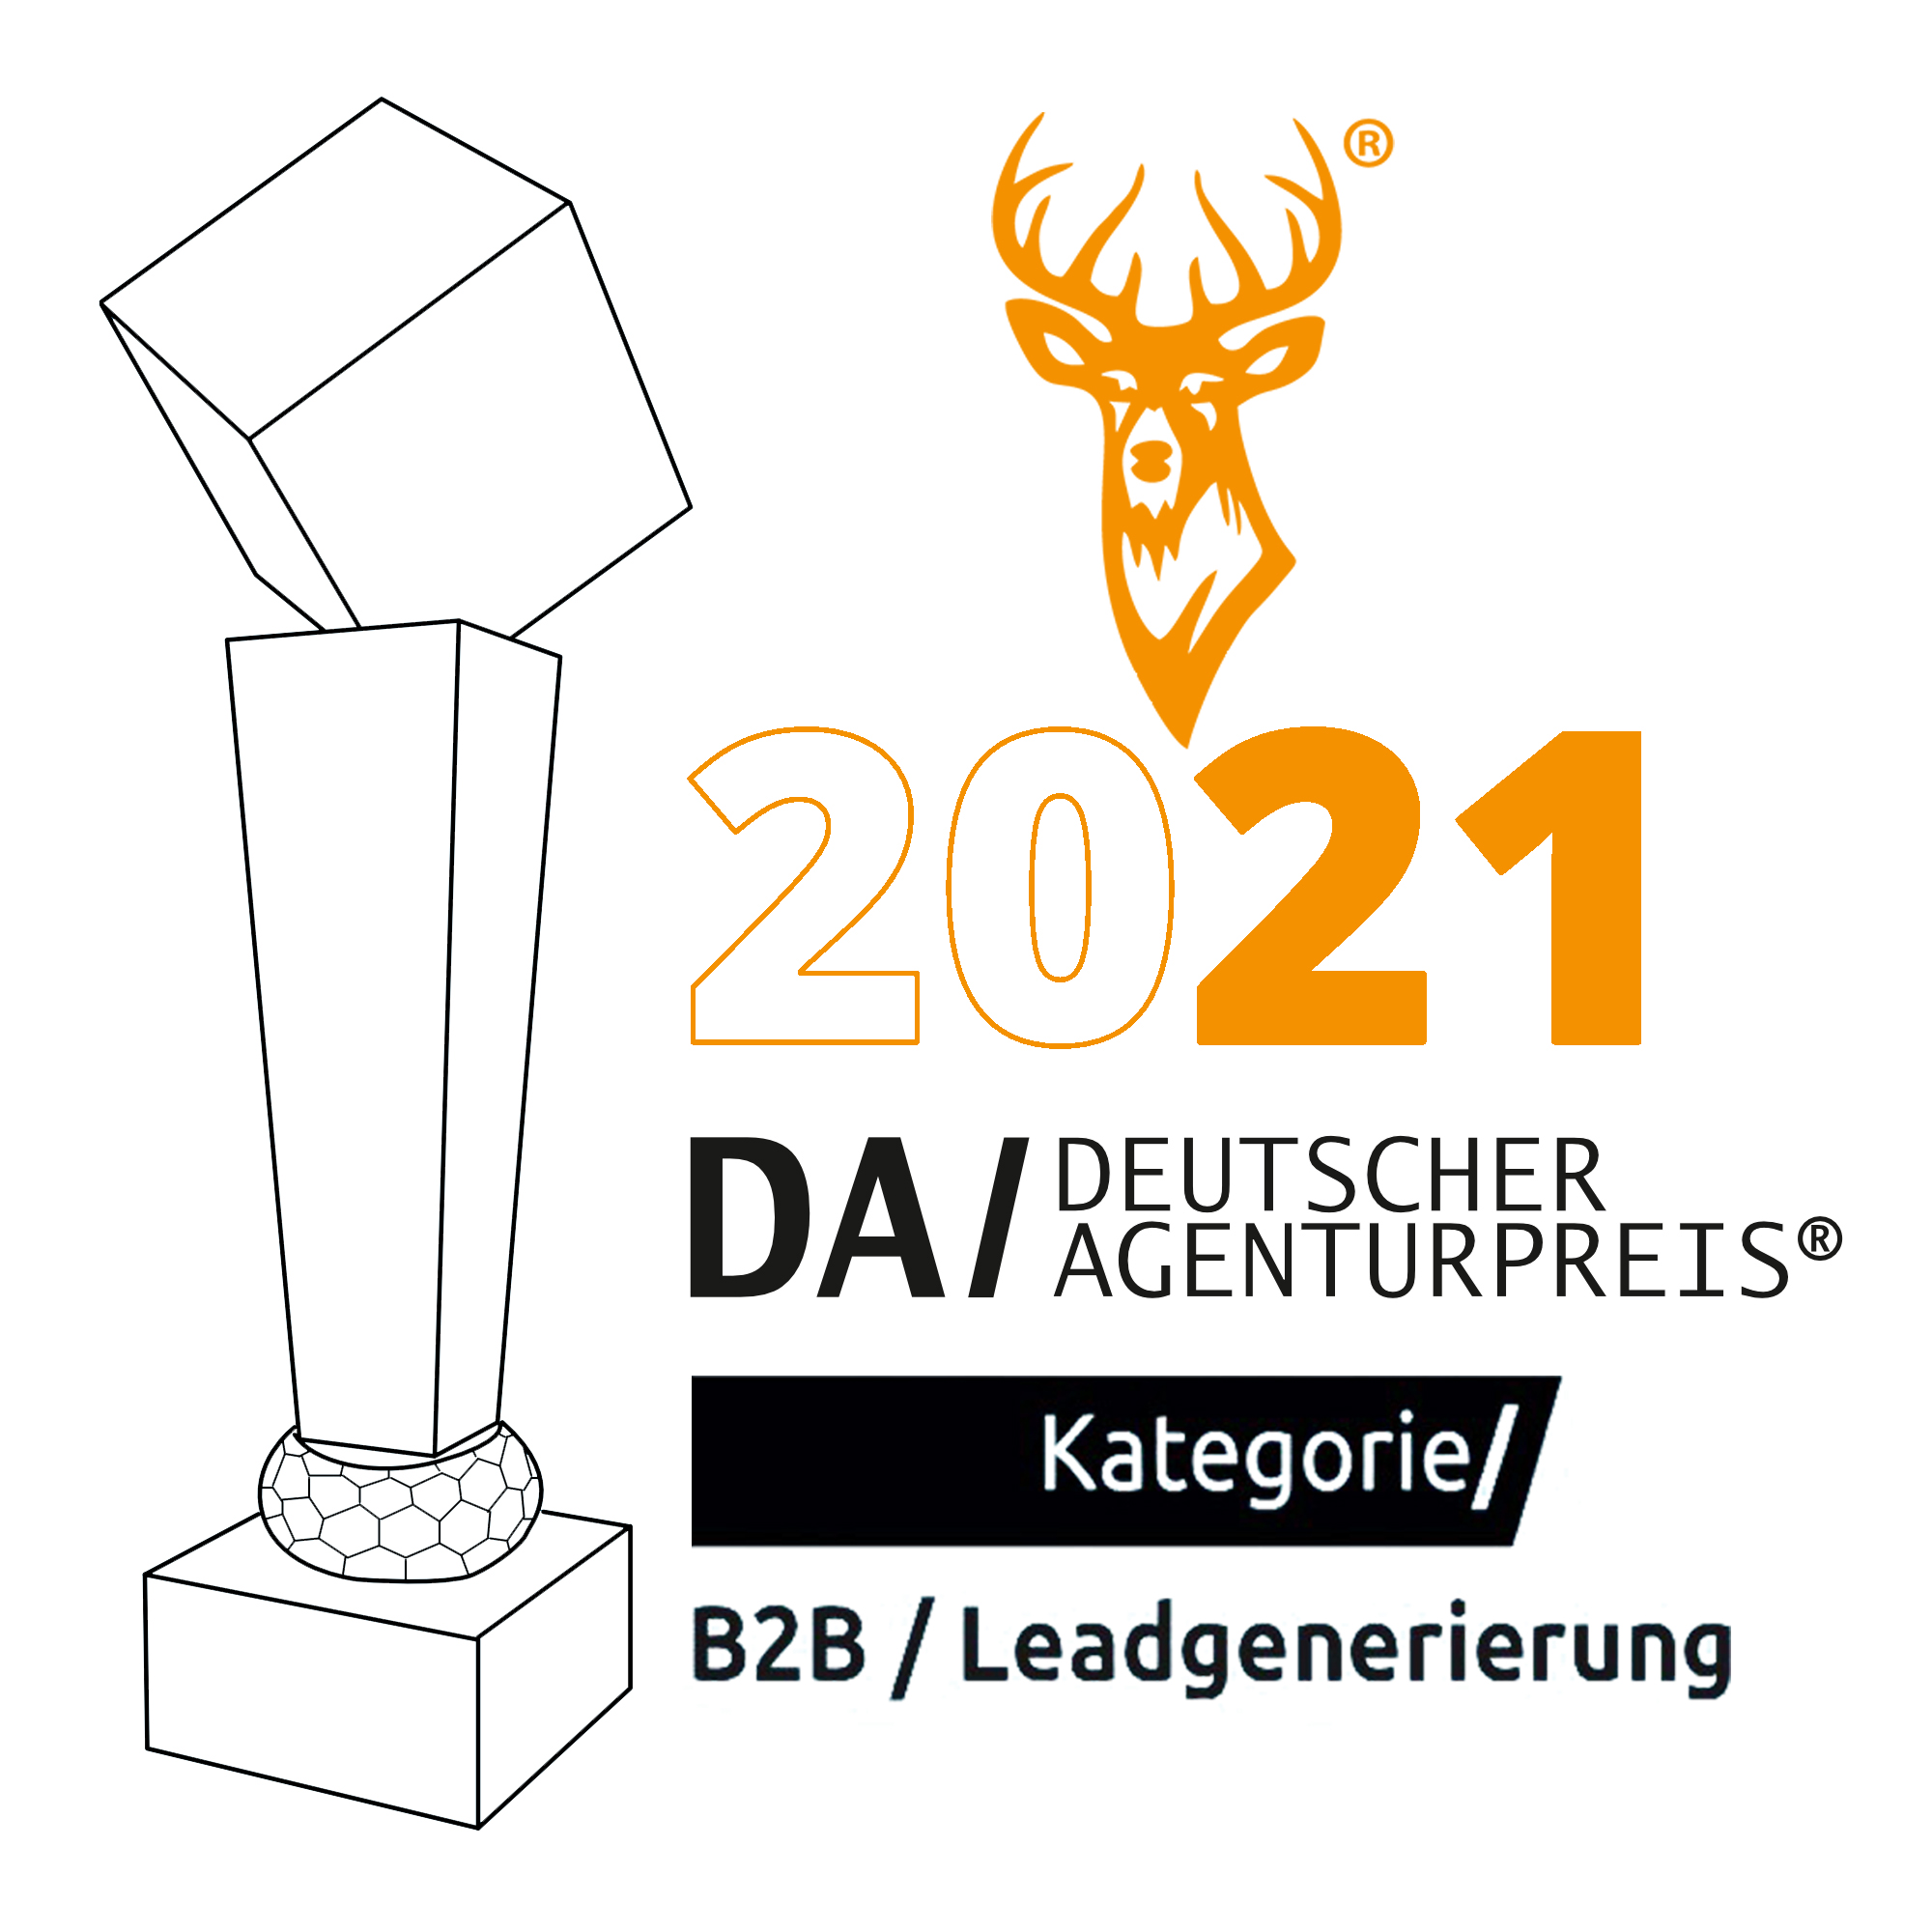 Deutscher Agenturpreis 2021 verliehen an PLATZHIRSCH Vertriebsagentur